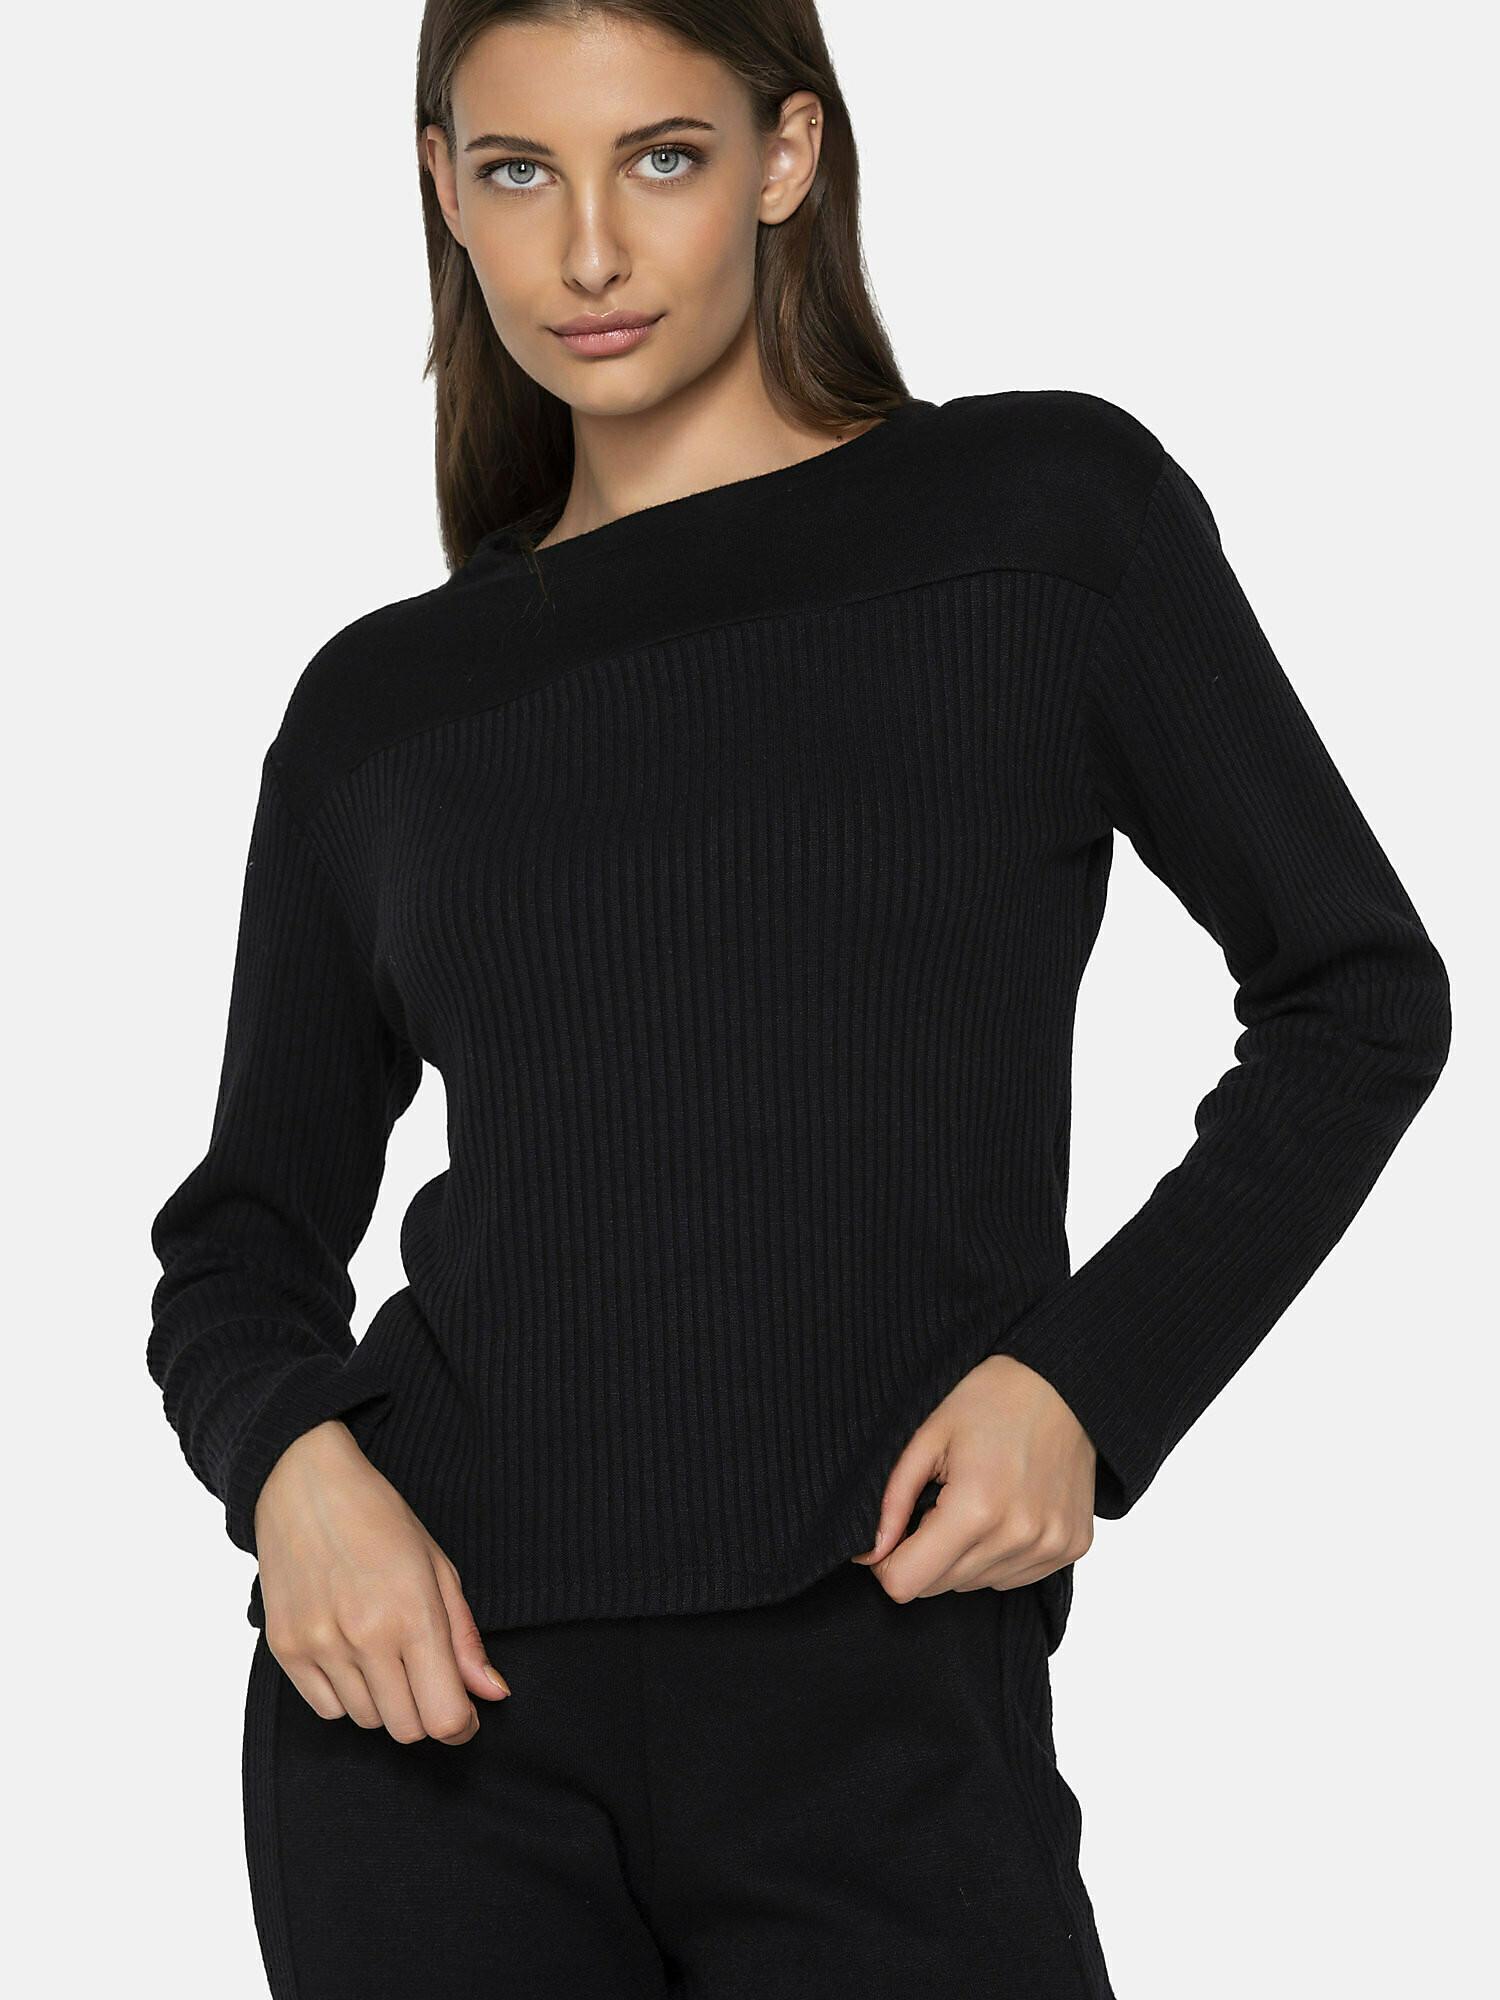 Sweatshirt Connected Damen Schwarz XXL von Luna